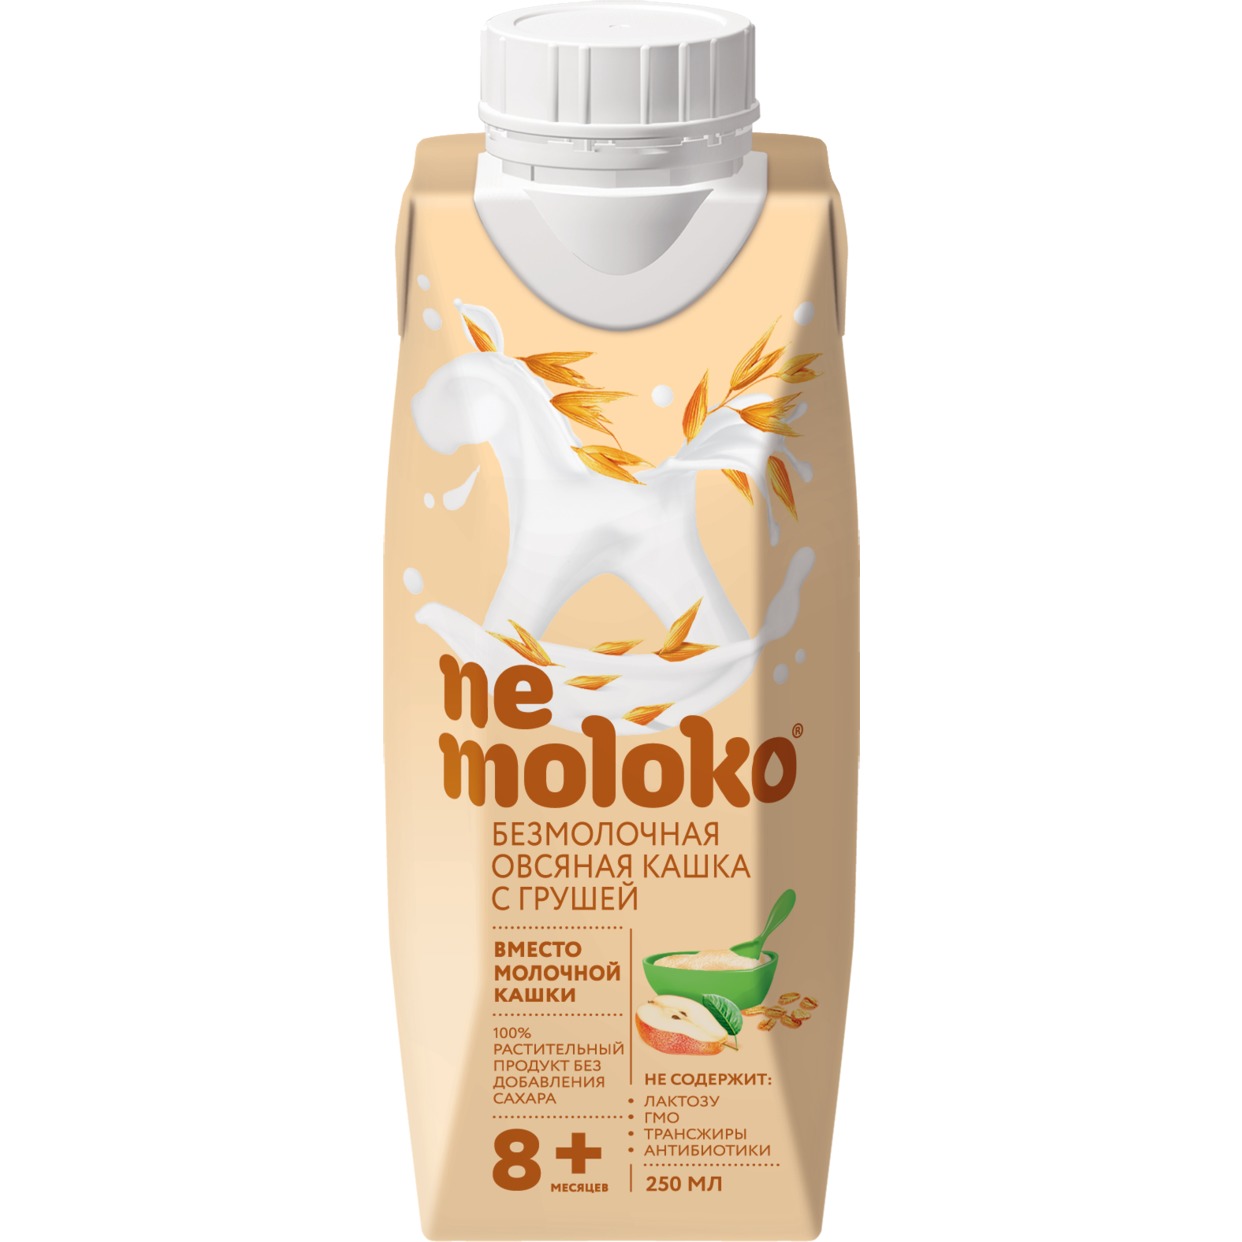 "Nemoloko" каша овсяная безмолочная с грушей для детского питания ,обогащенная витаминами и минеральными веществами 0,25л по акции в Пятерочке